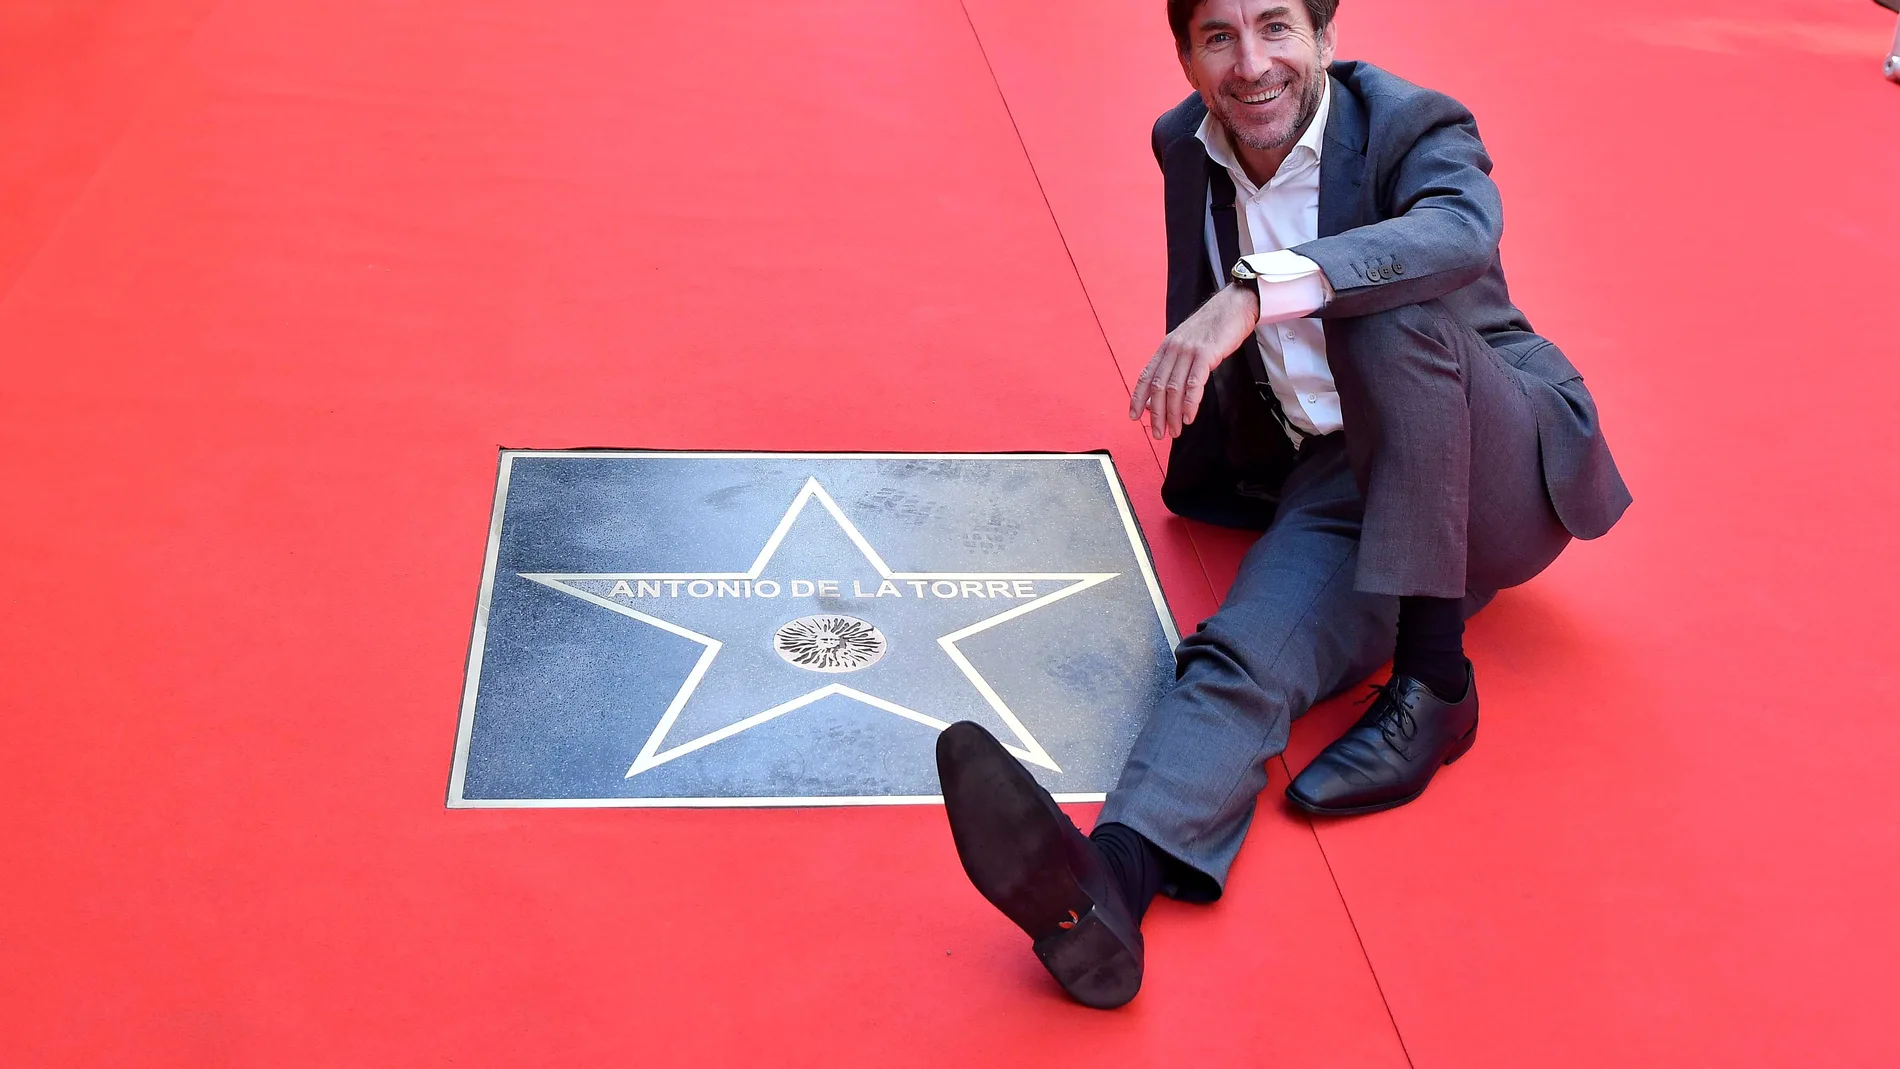 El actor Antonio de la Torre tras descubrir una estrella con su nombre en el Paseo de la Fama de Almería